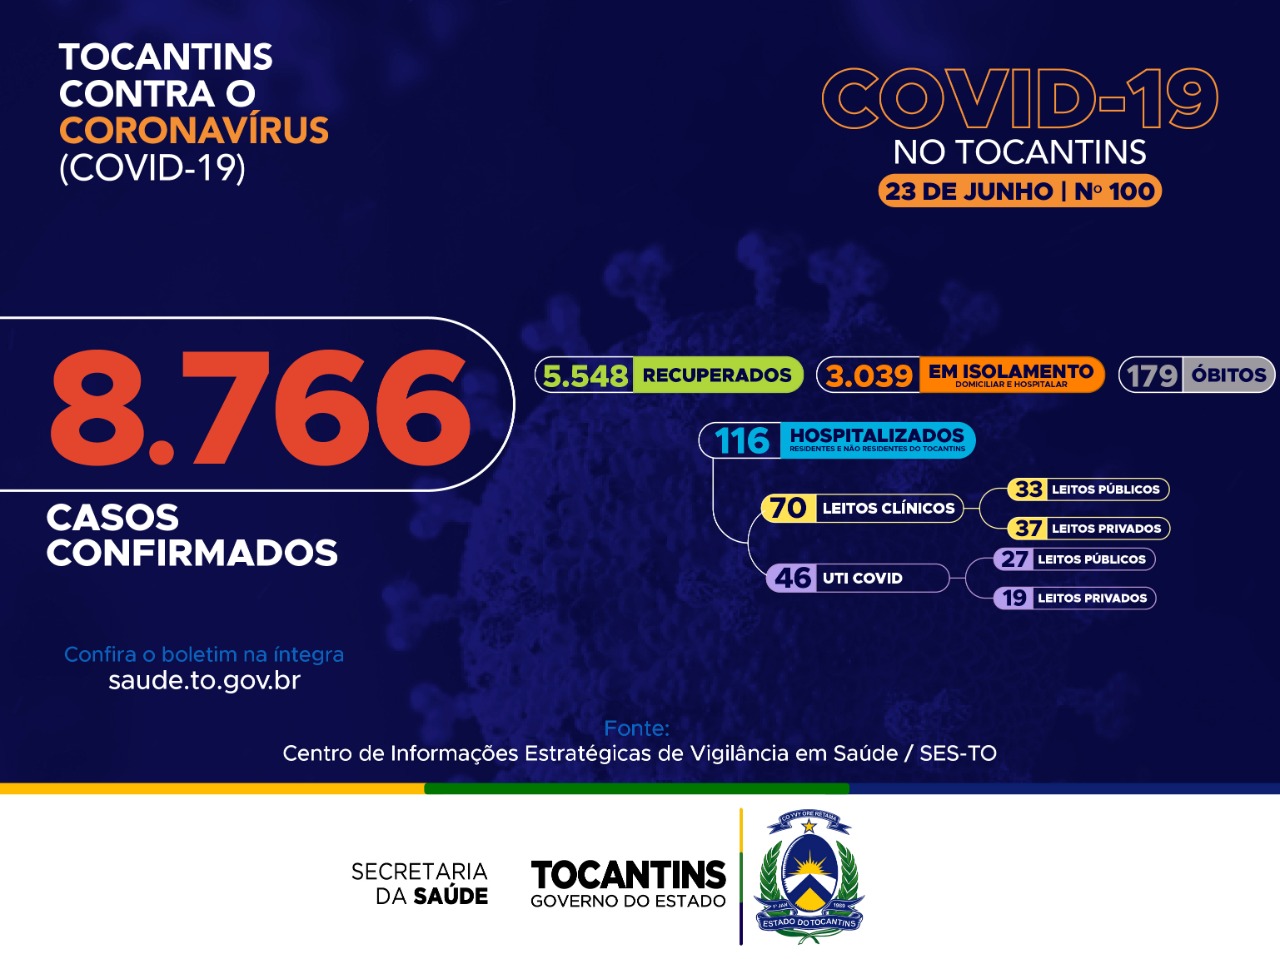 Coronavírus: 100 dias no Tocantins e mais de 5 mil recuperados